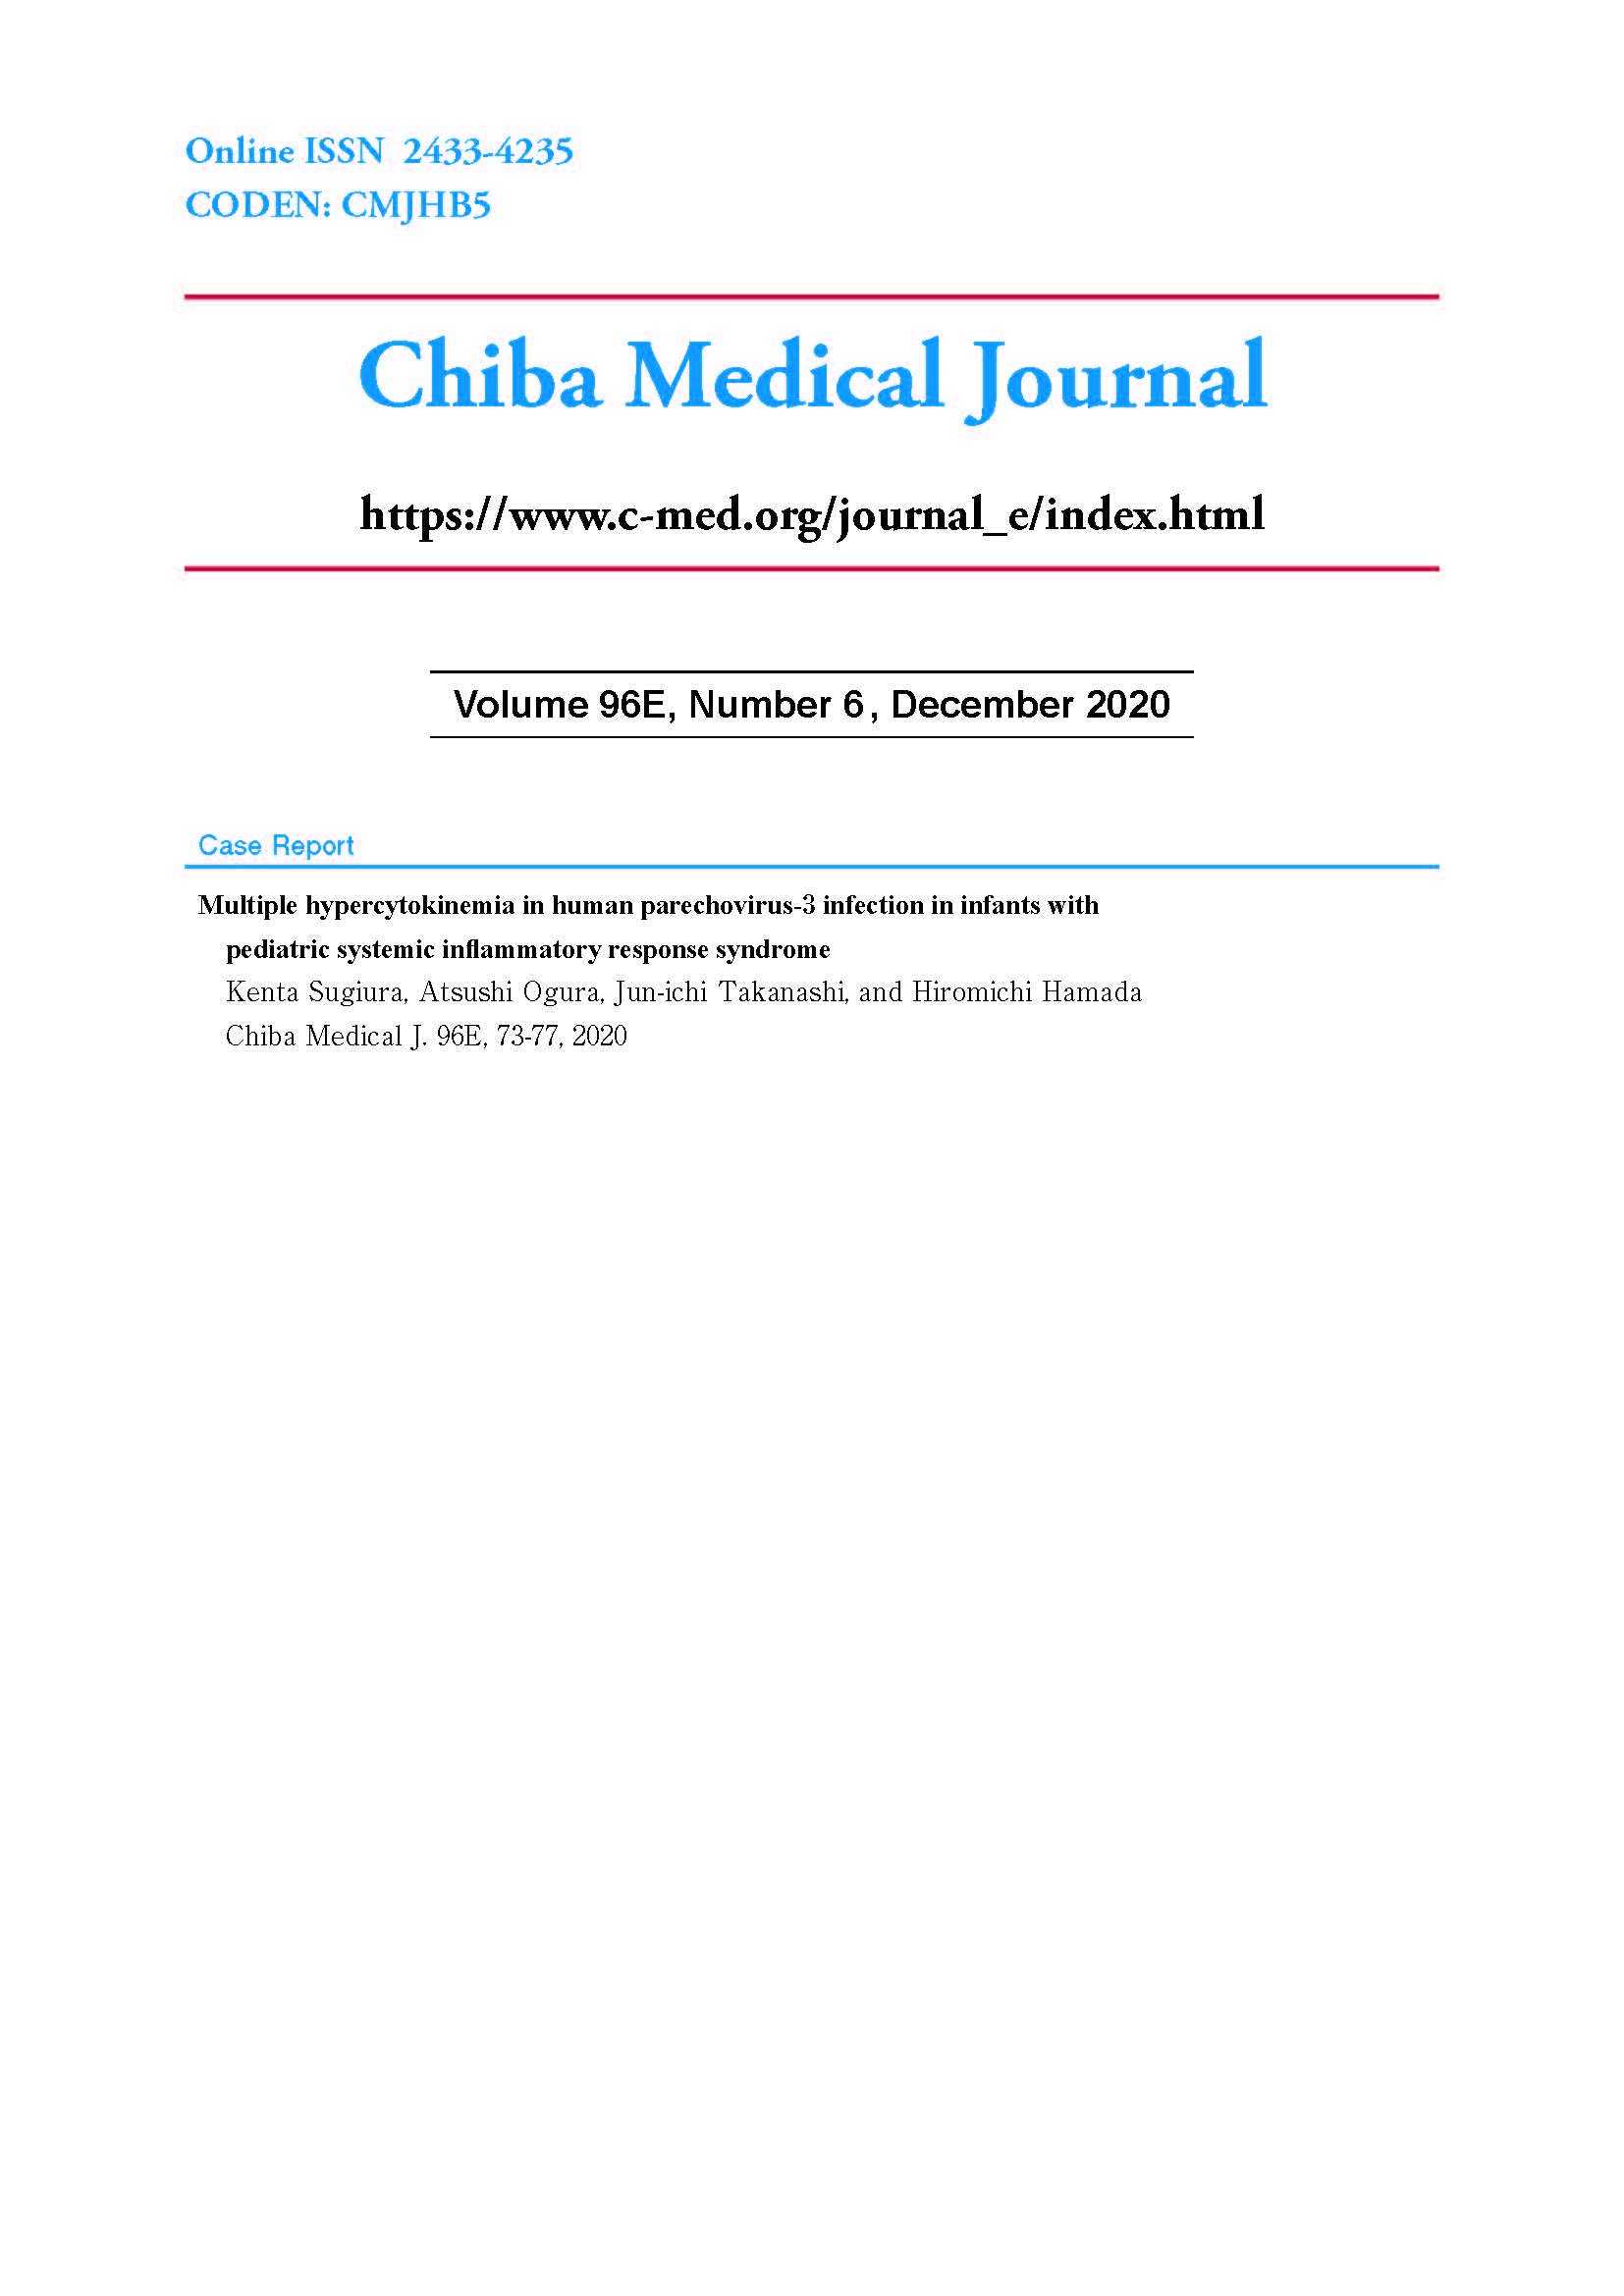 Chiba Medical Journal ; Vol. 96E No. 6